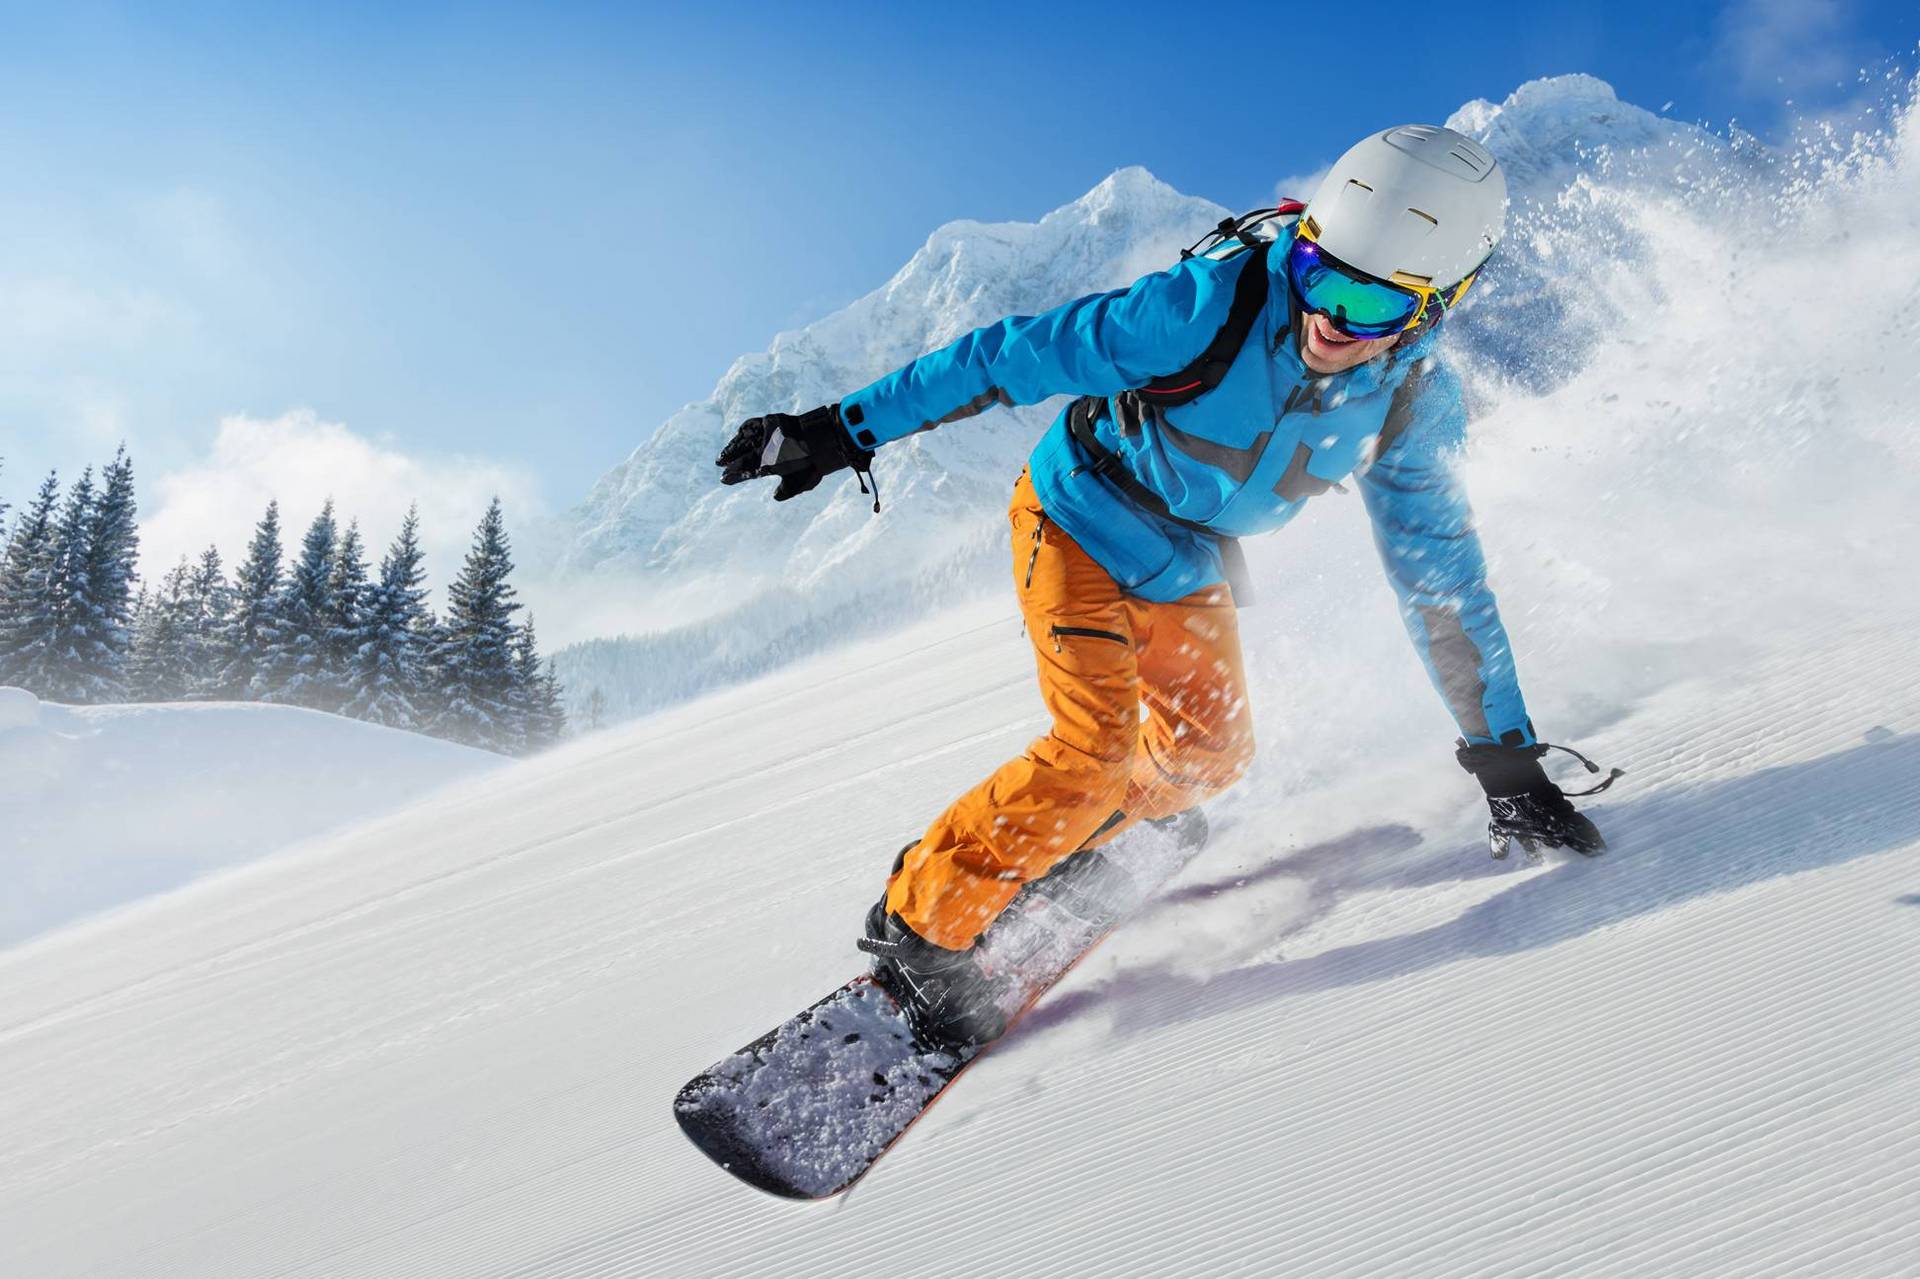 Ein ambitionierter Snowboarder fährt die Piste runter. Im Hintergrund sind Wald und Berge zu sehen.